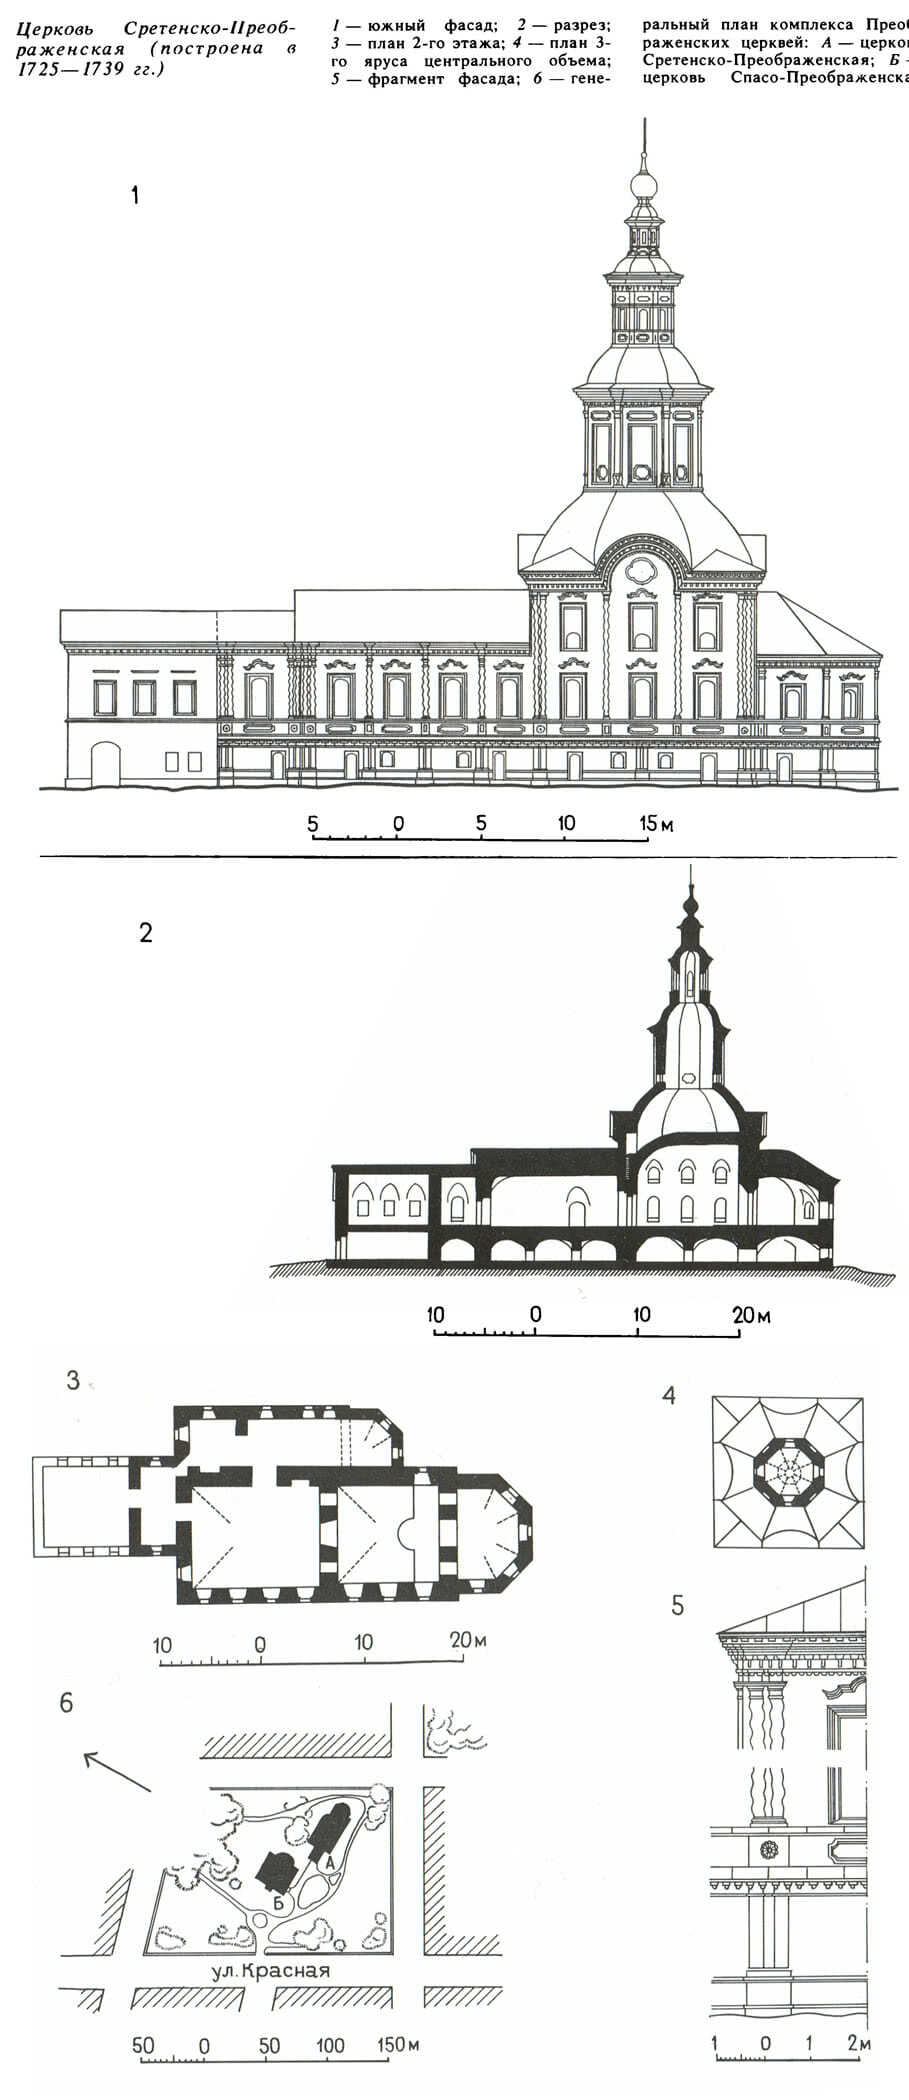 Церковь Сретенско-Преображенская (построена в 1725—1739 гг.)